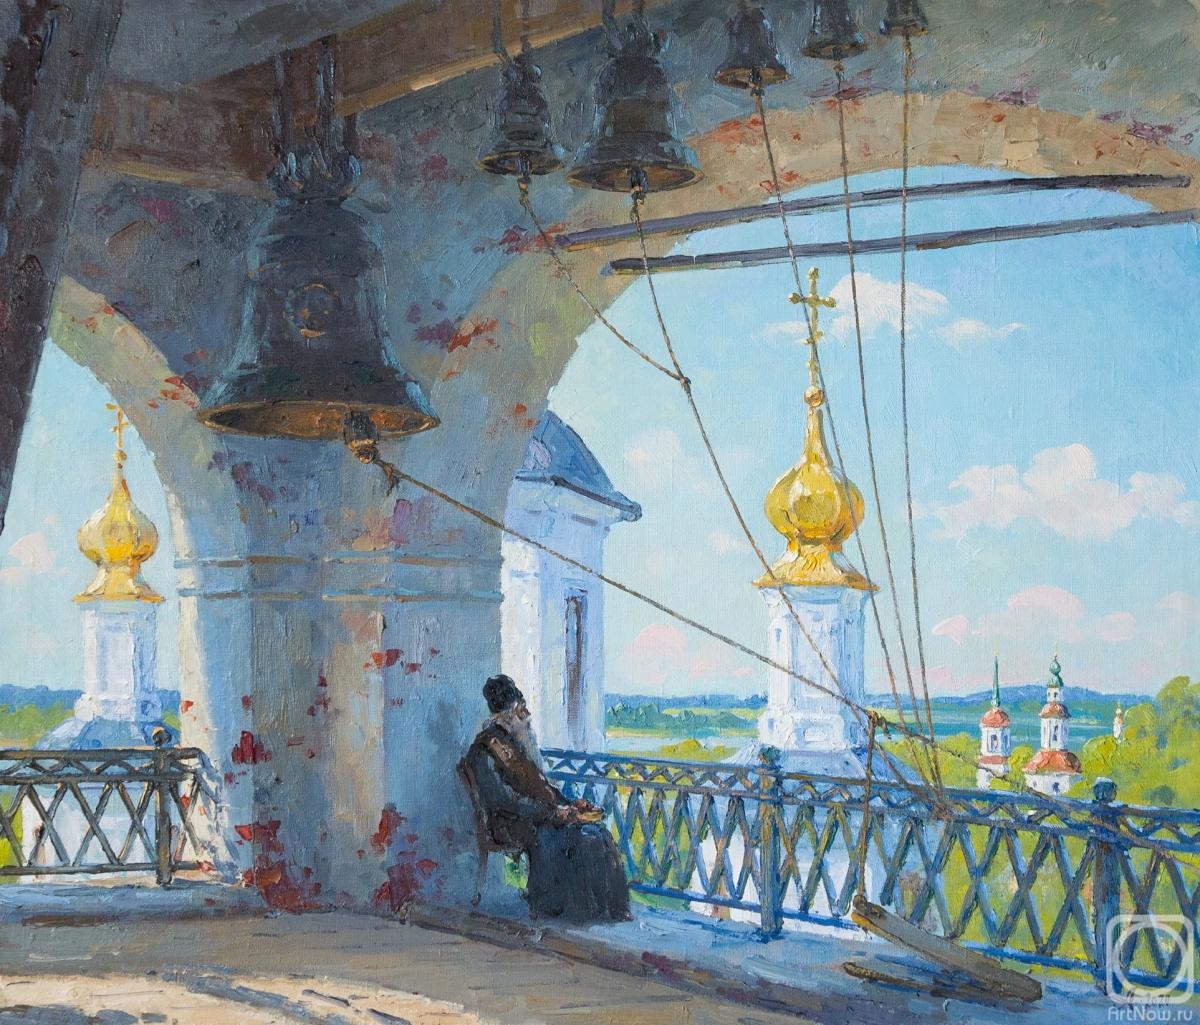 Alexandrovsky Alexander. Great Ustyug, bell tower